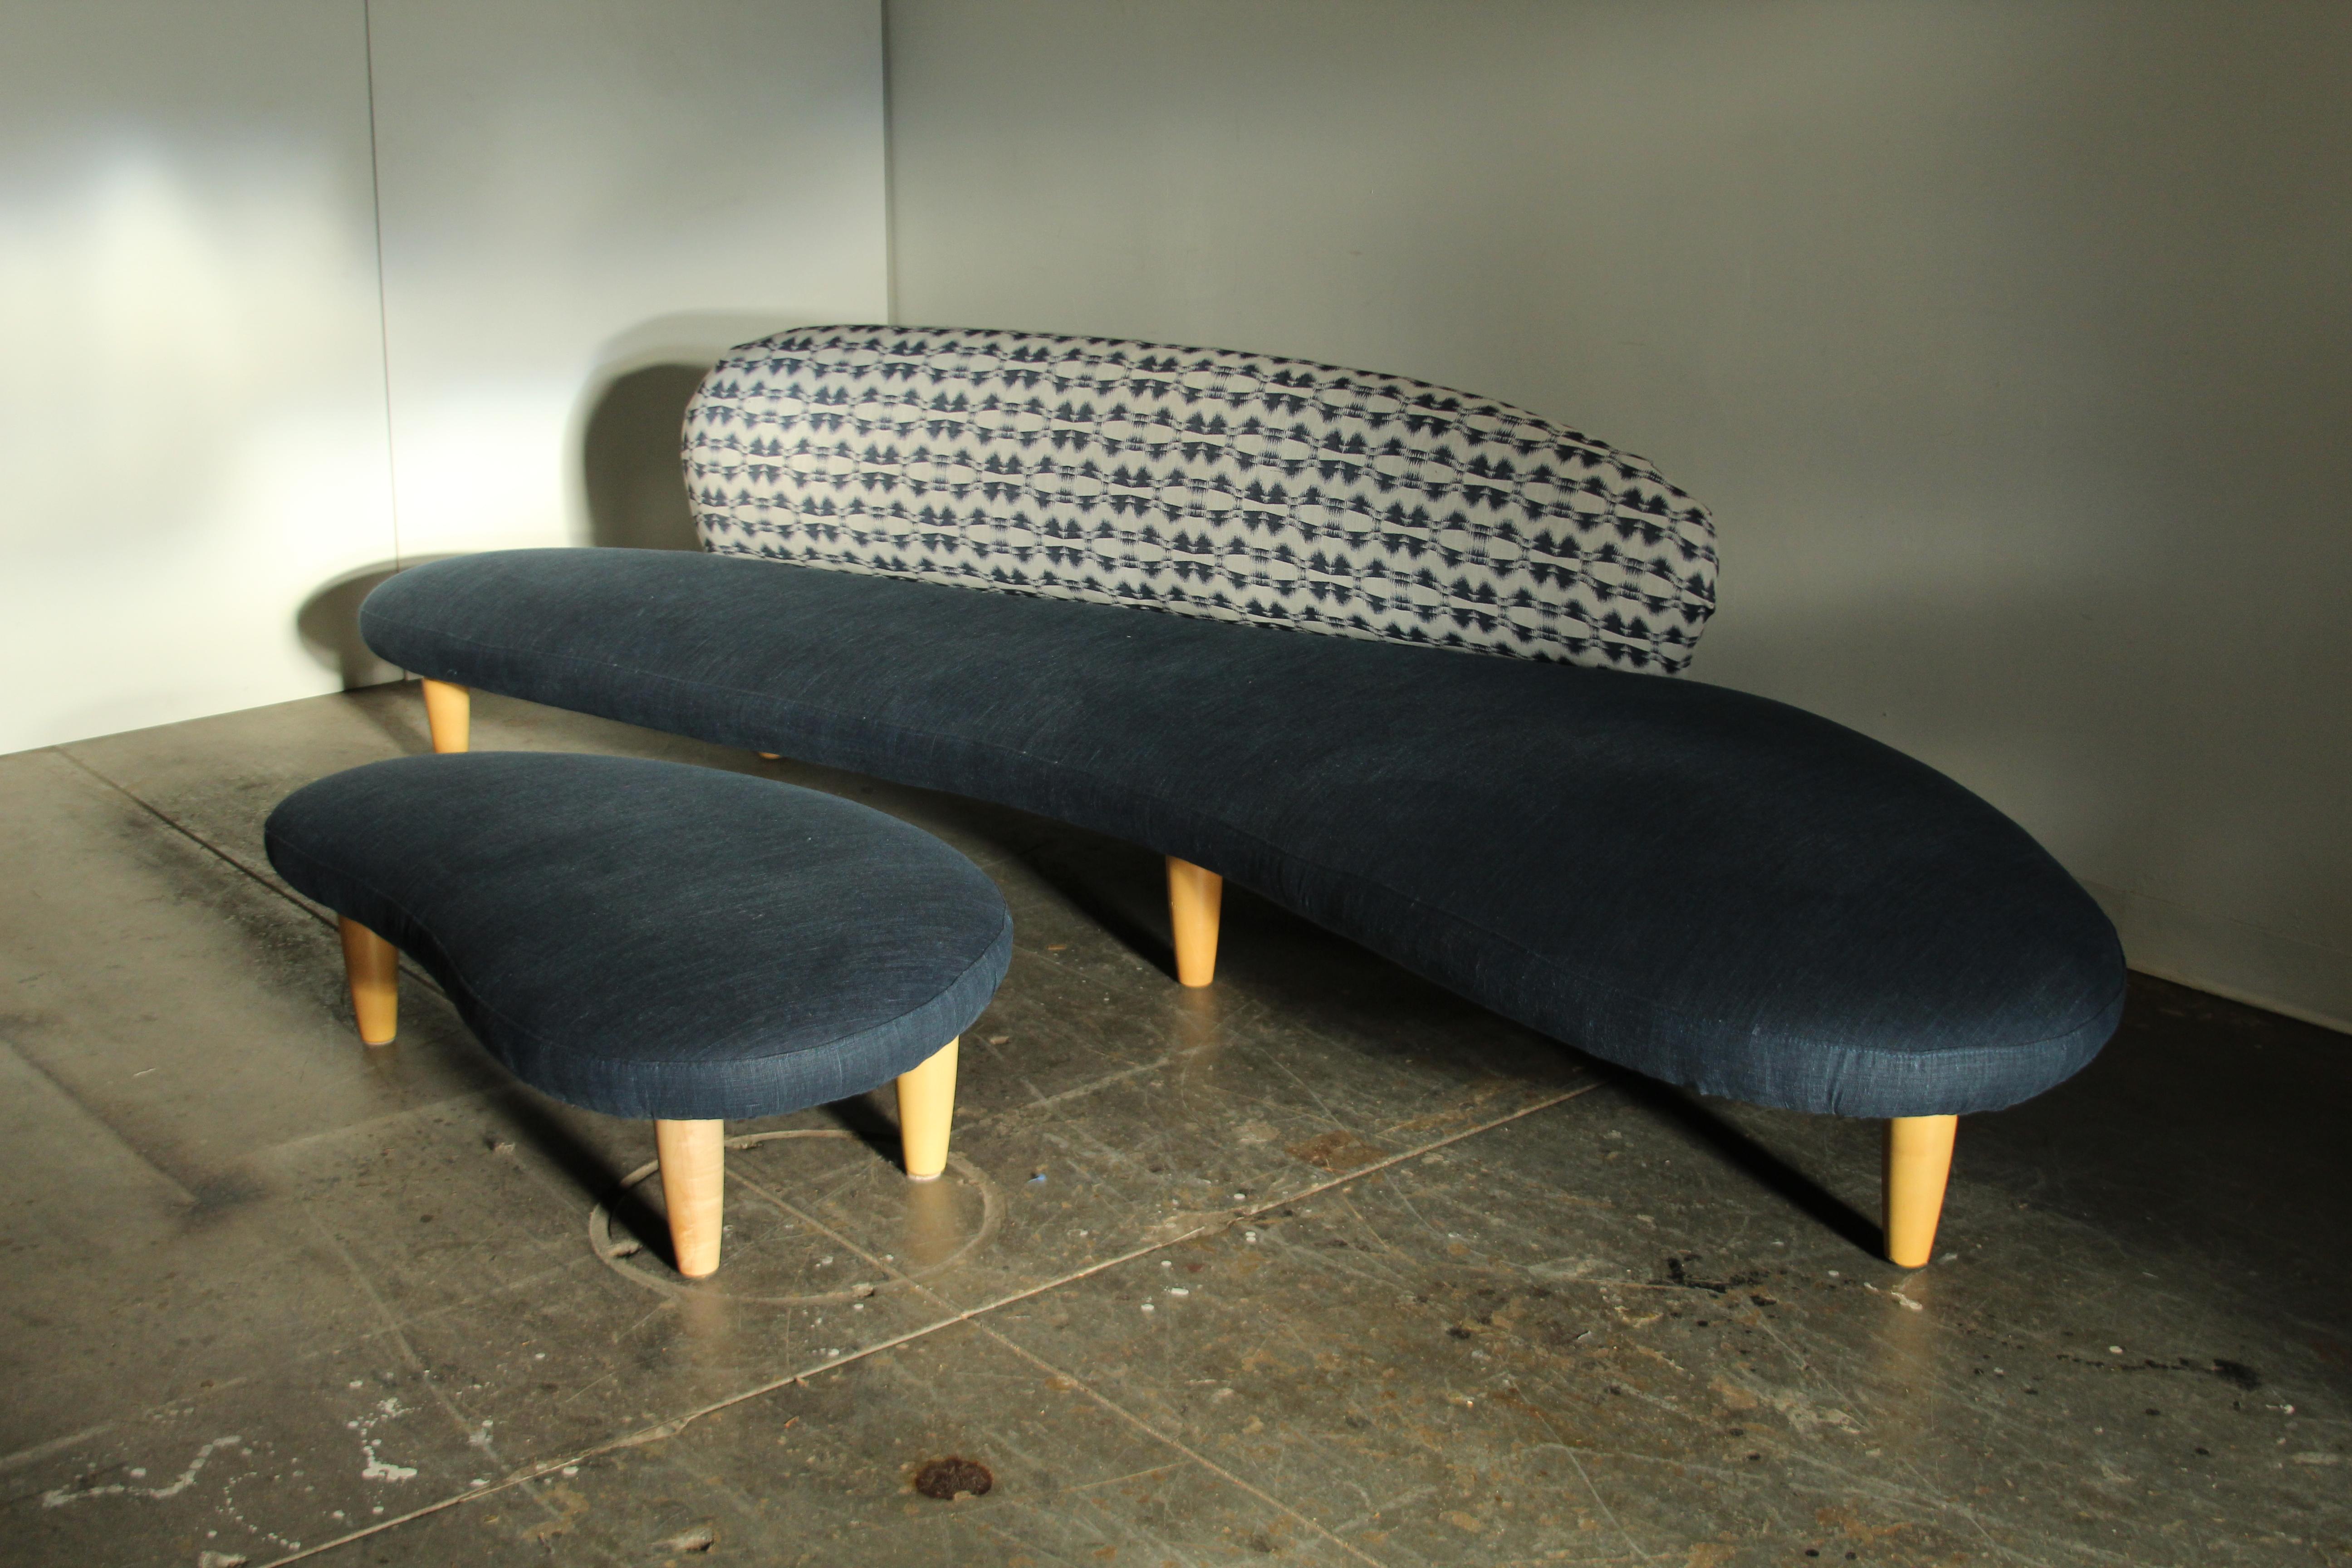 Ein erhabenes Freeform-Sofa von Isamu Noguchi, hergestellt von Vitra um 2002. Dies ist ein sehr frühes Exemplar: das 33. produzierte Stück, um genau zu sein. Dieses lange, niedrige und organische Sofa ist neu gepolstert worden. Die Sitzfläche des